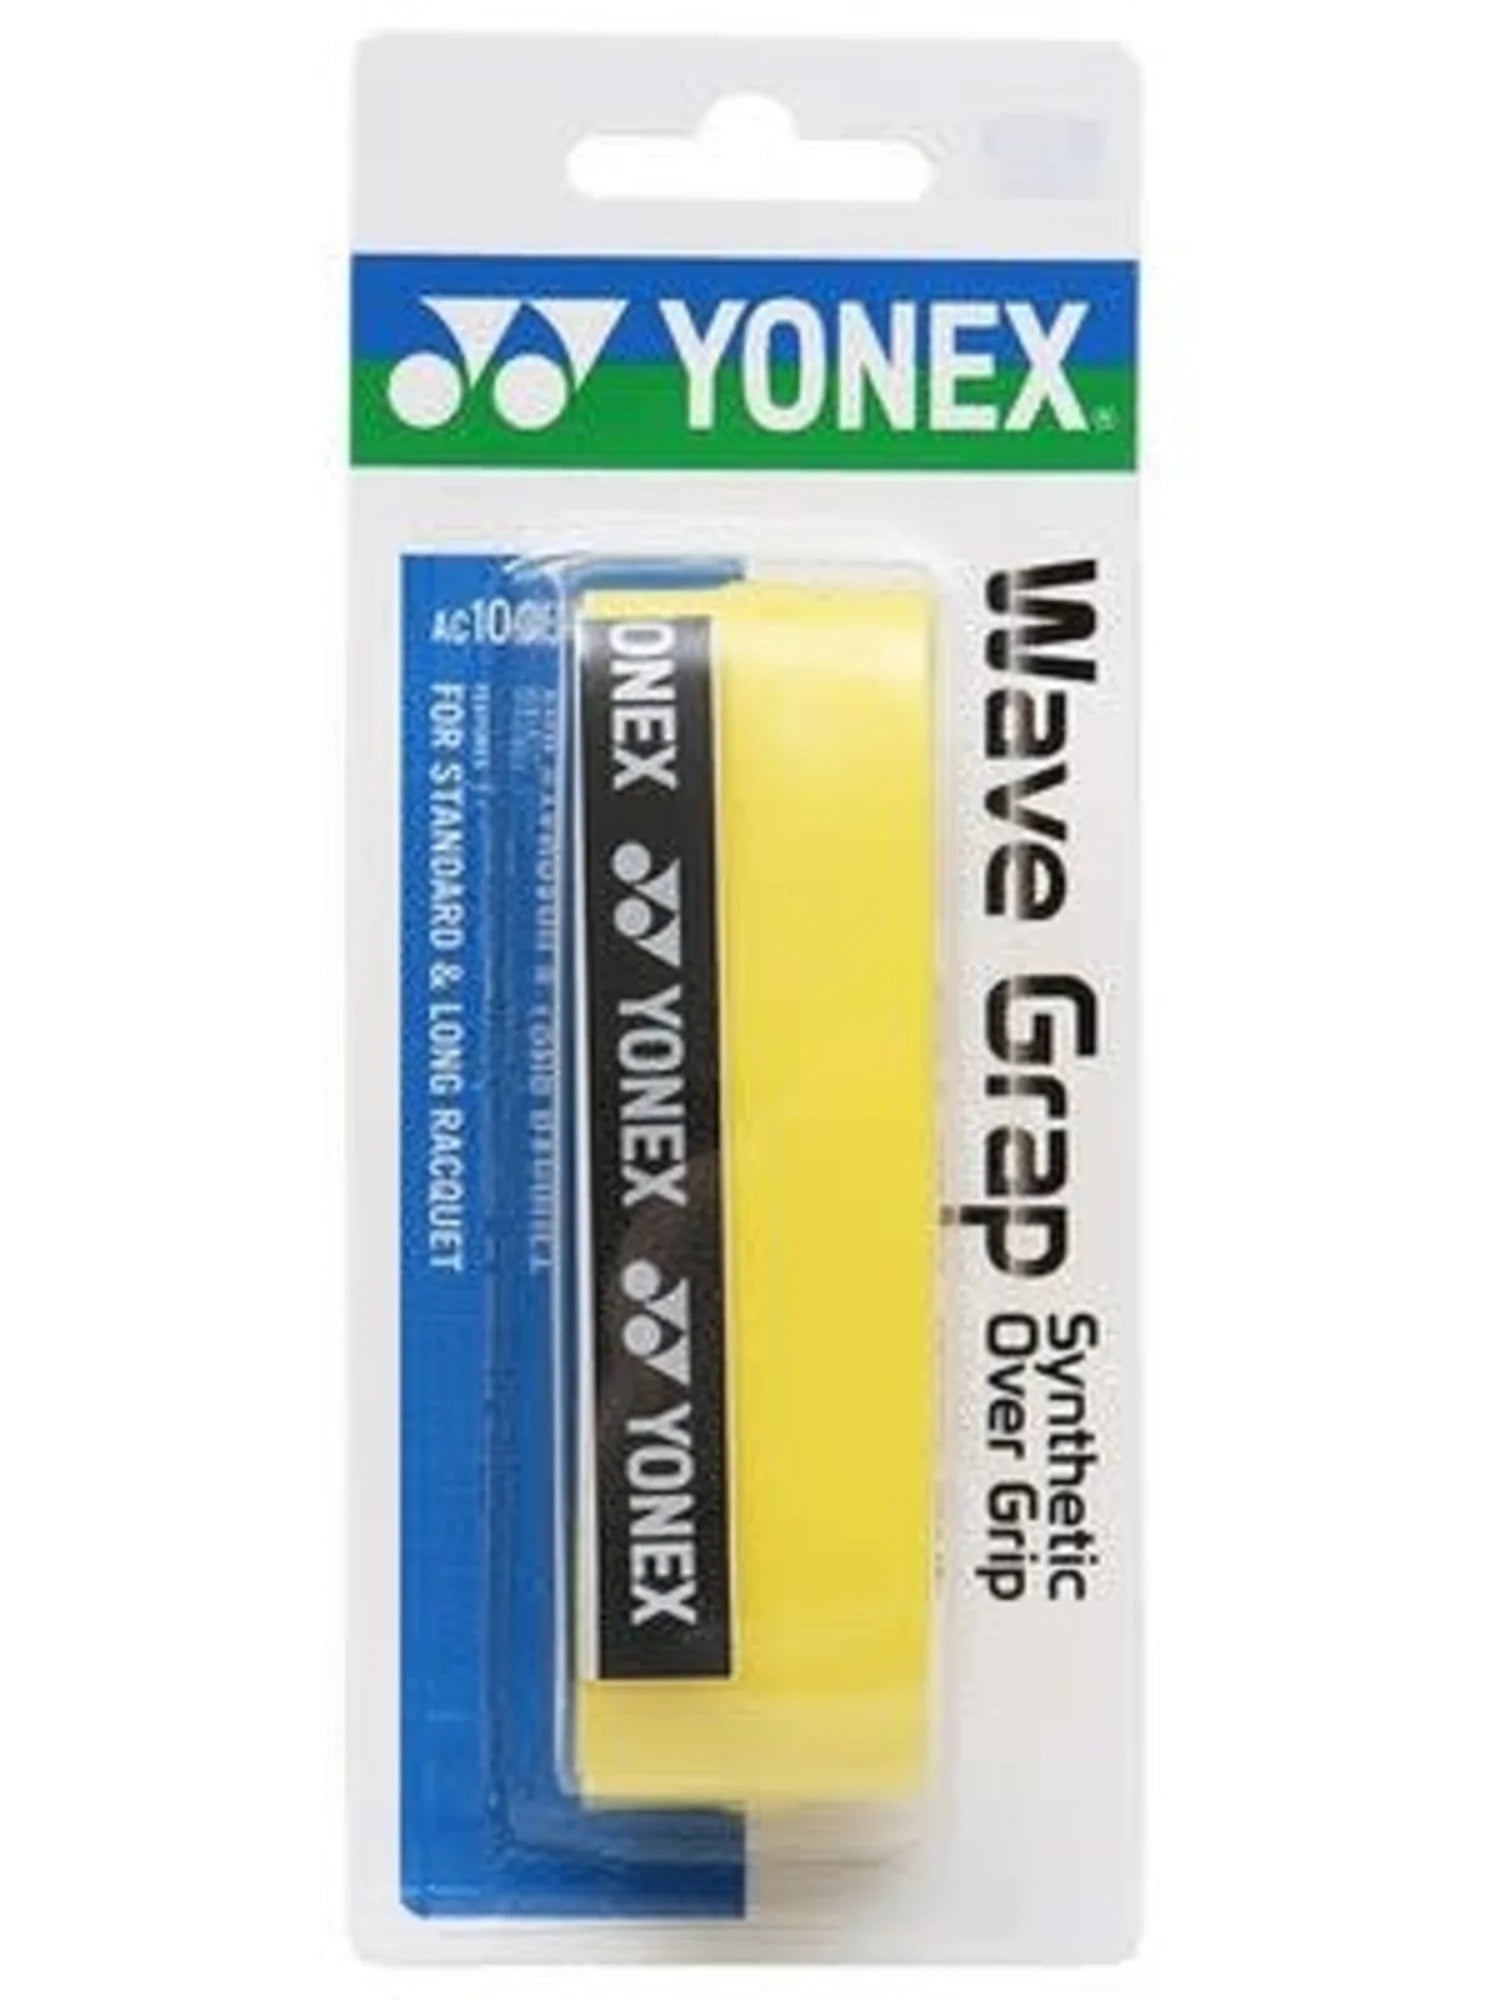 YONEX WAVE GRAP - Max Sports